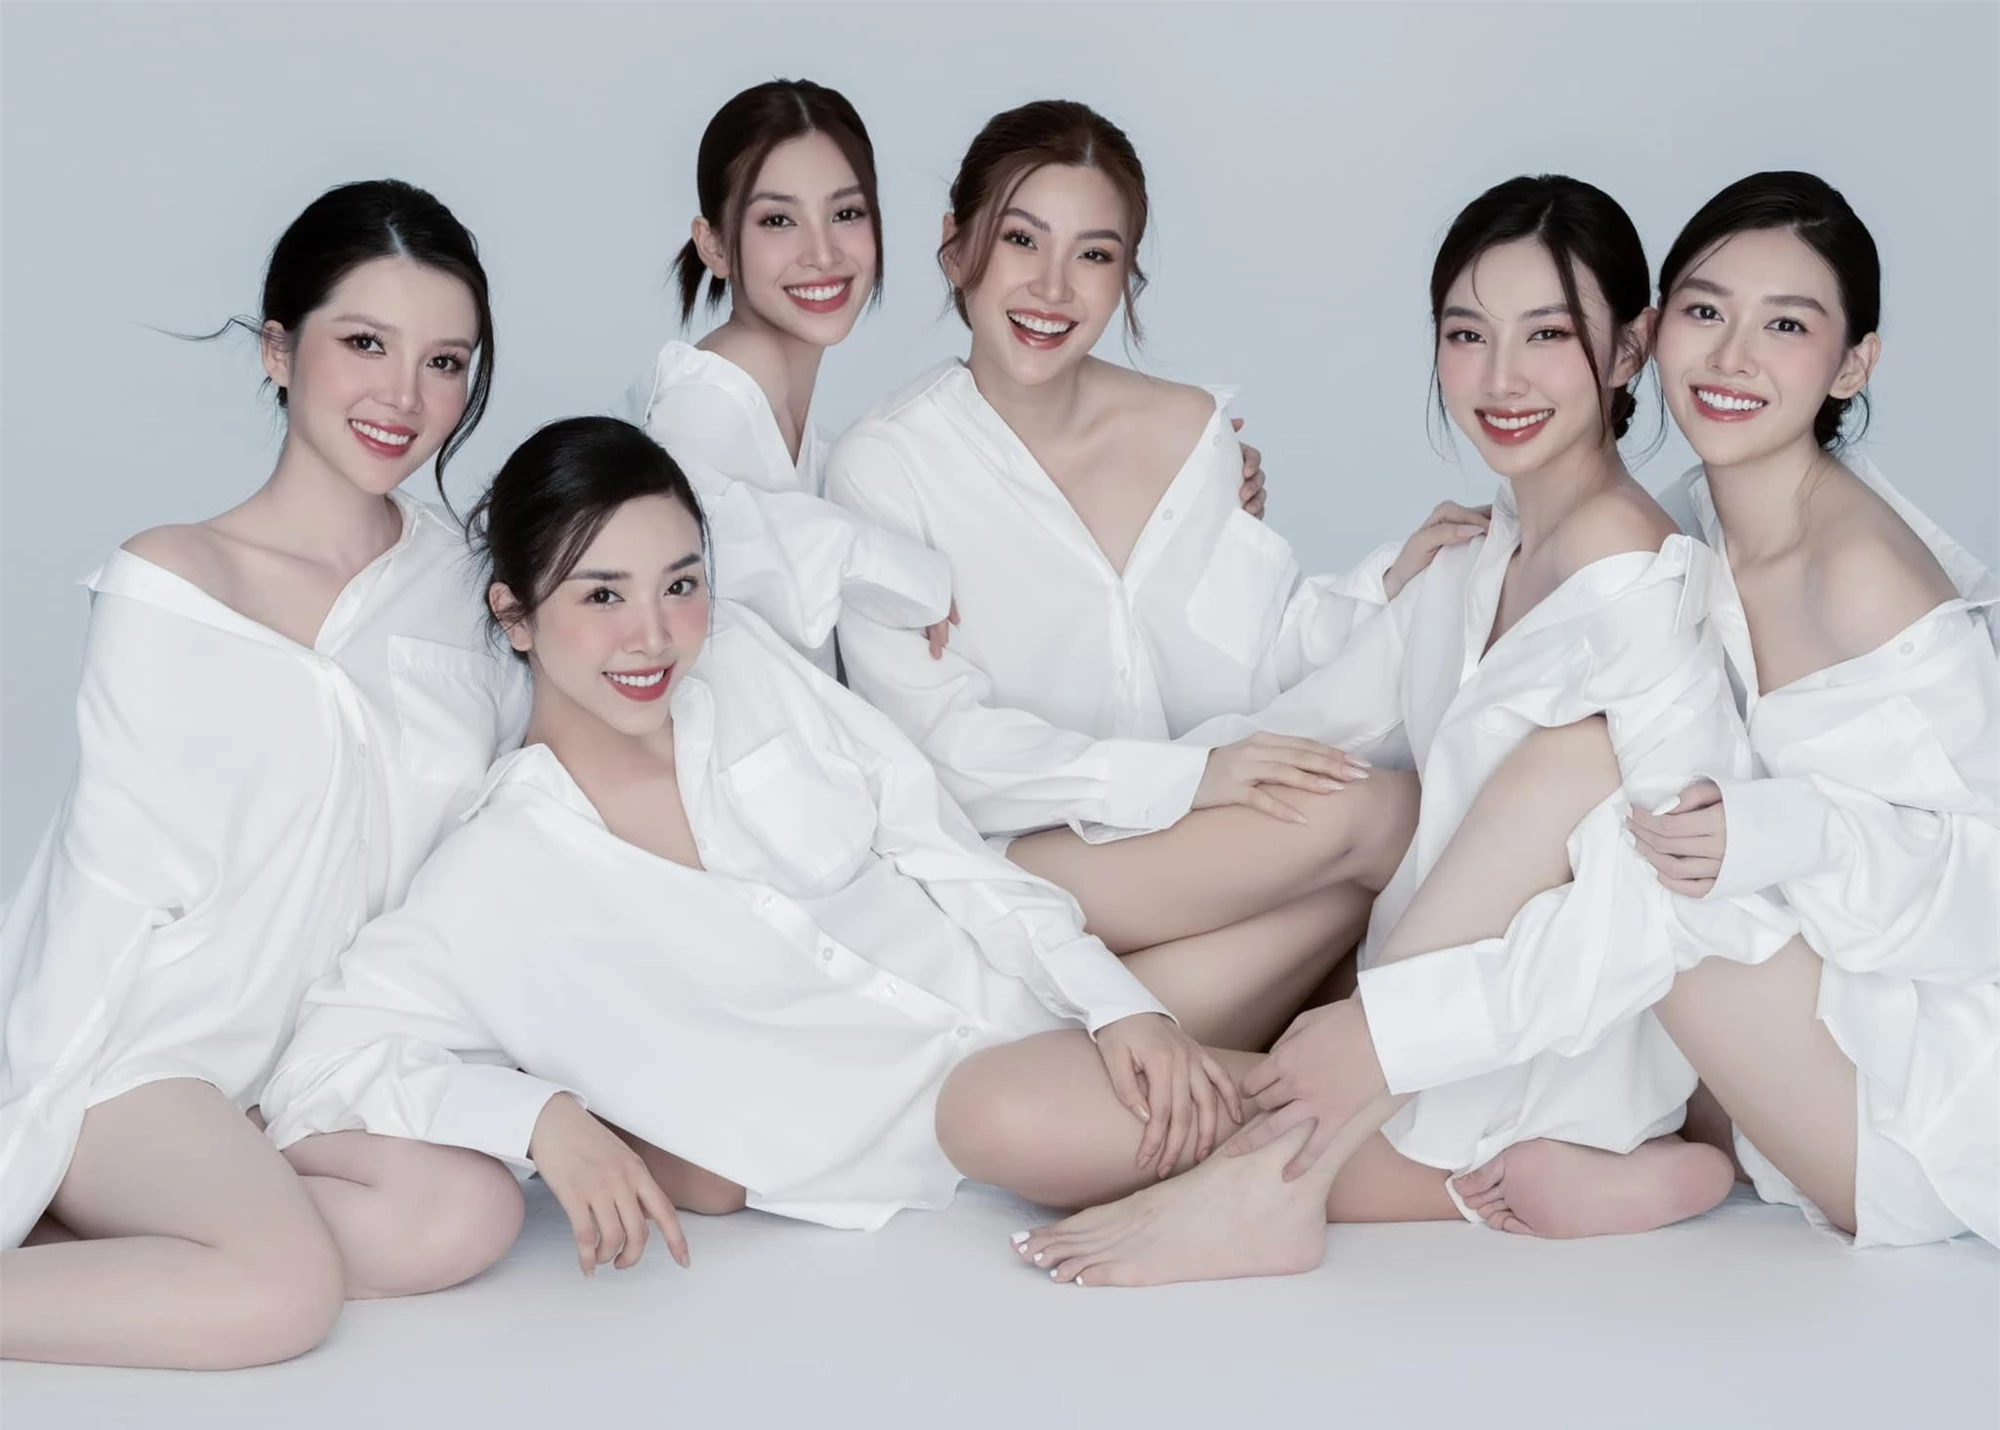 Showbiz Việt có 1 hội bạn thân cực chất: Toàn các nàng hậu chân dài, gây sốt nhất là người đẹp kết hôn ở tuổi 20 - Ảnh 3.